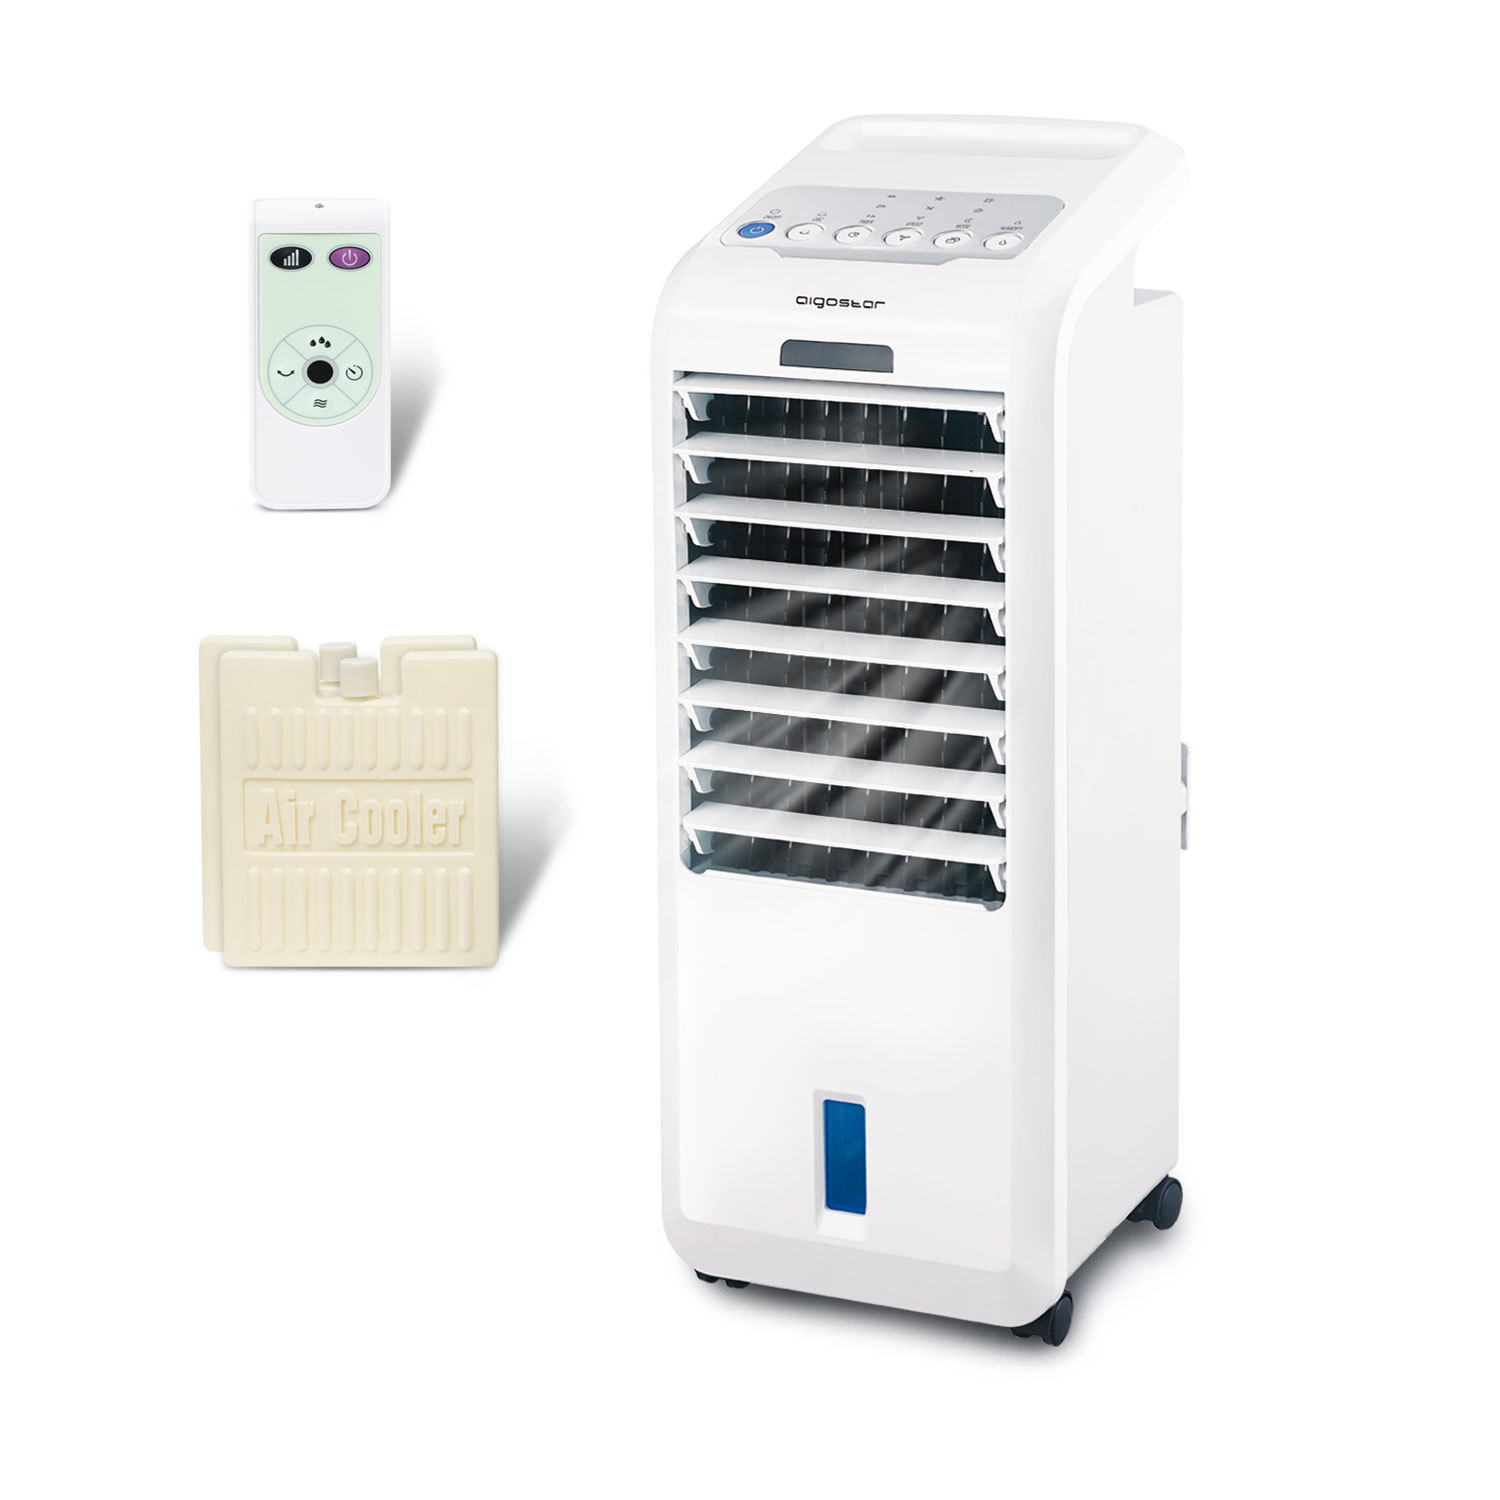 Aigostar Koud 33JTL - Raffrescatore Evaporativo, Refrigeratore e purificatore d'aria. 55W, 3 modalità selezionabile con telecomando. Timer 7 ore. 5 litri. 2 blocchi ghiaccio inclusa.